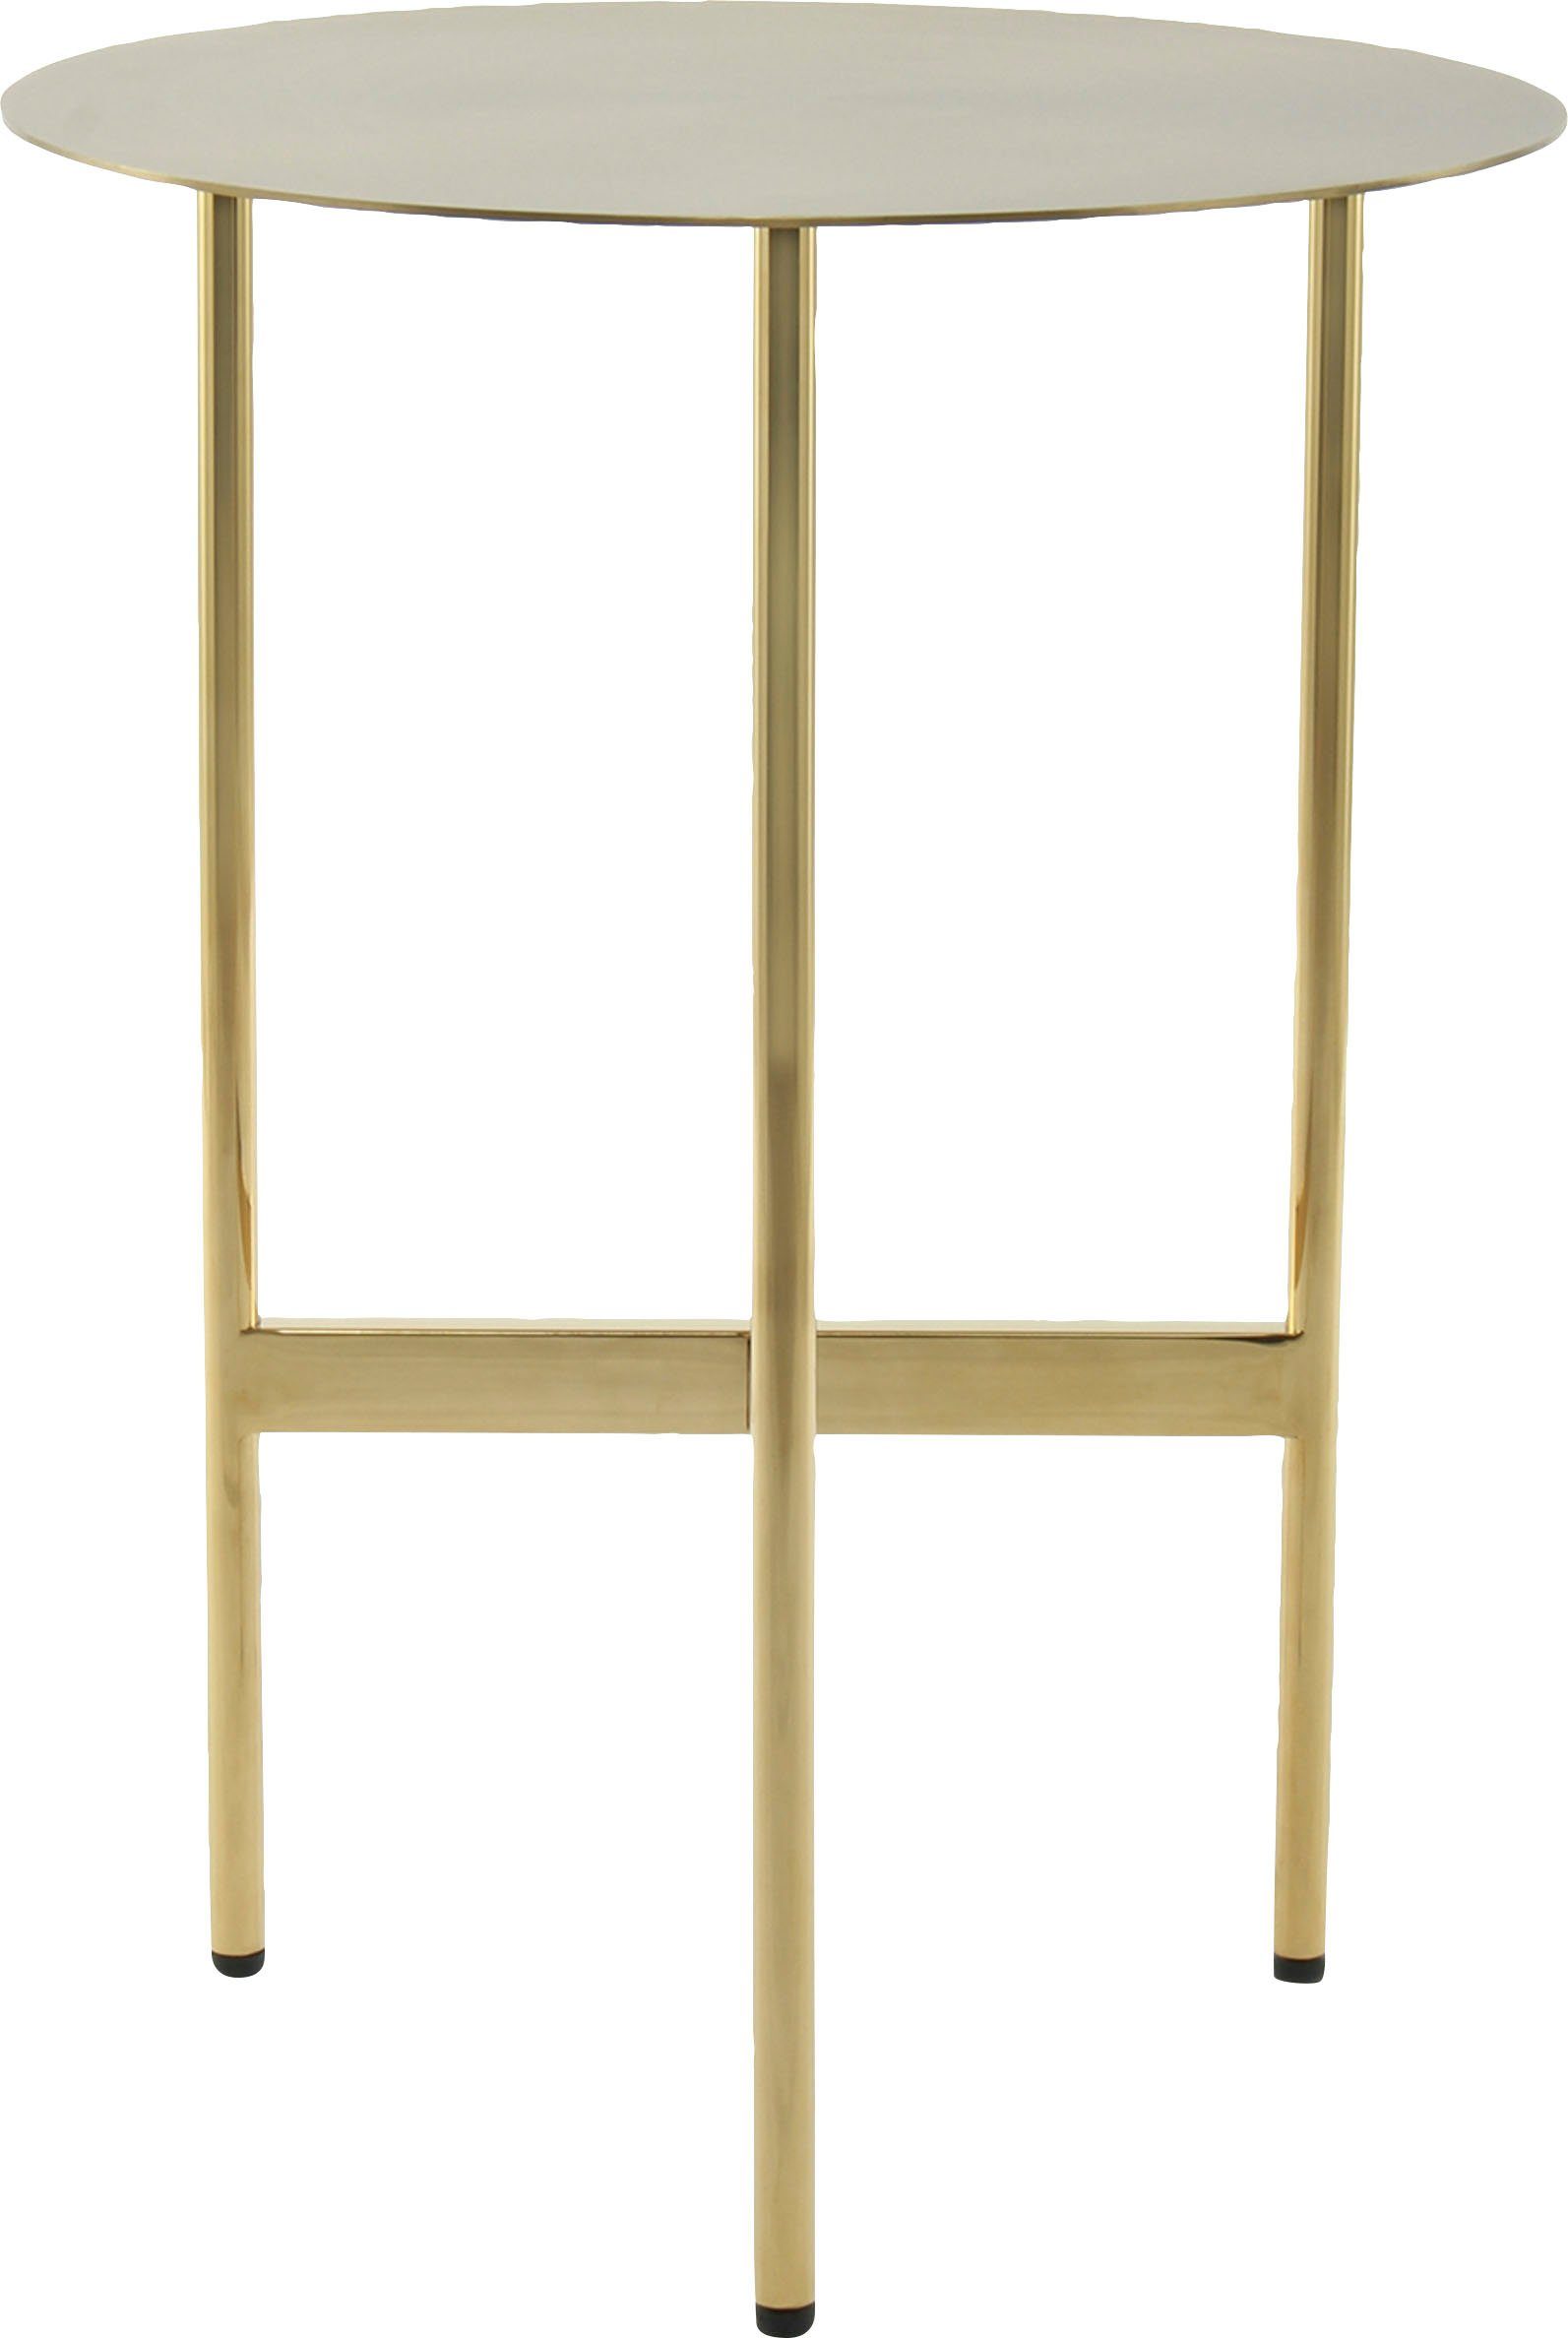 Kayoom Beistelltisch runde Ablagefläche aus Gestelldesign Gold minimalistisches Pema, Edelstahl